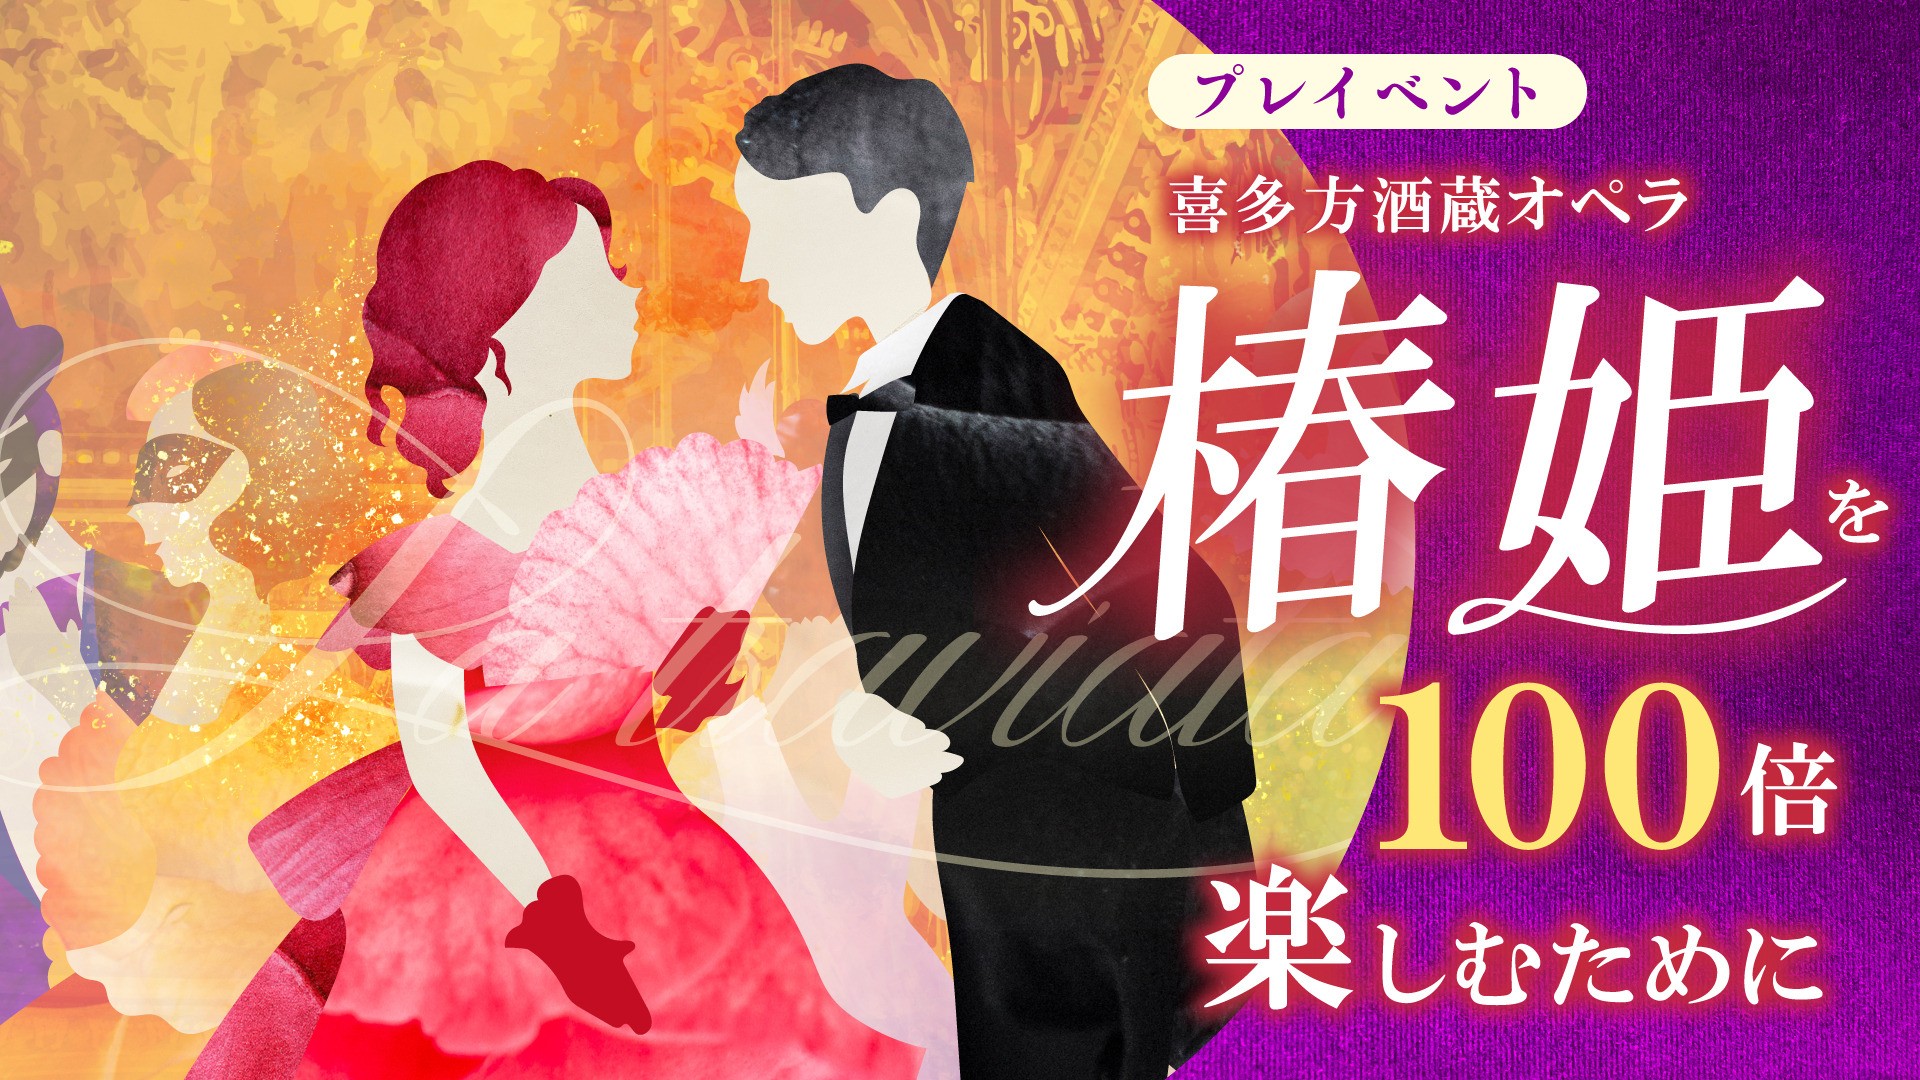 喜多方酒蔵オペラ「椿姫」を100倍楽しむために